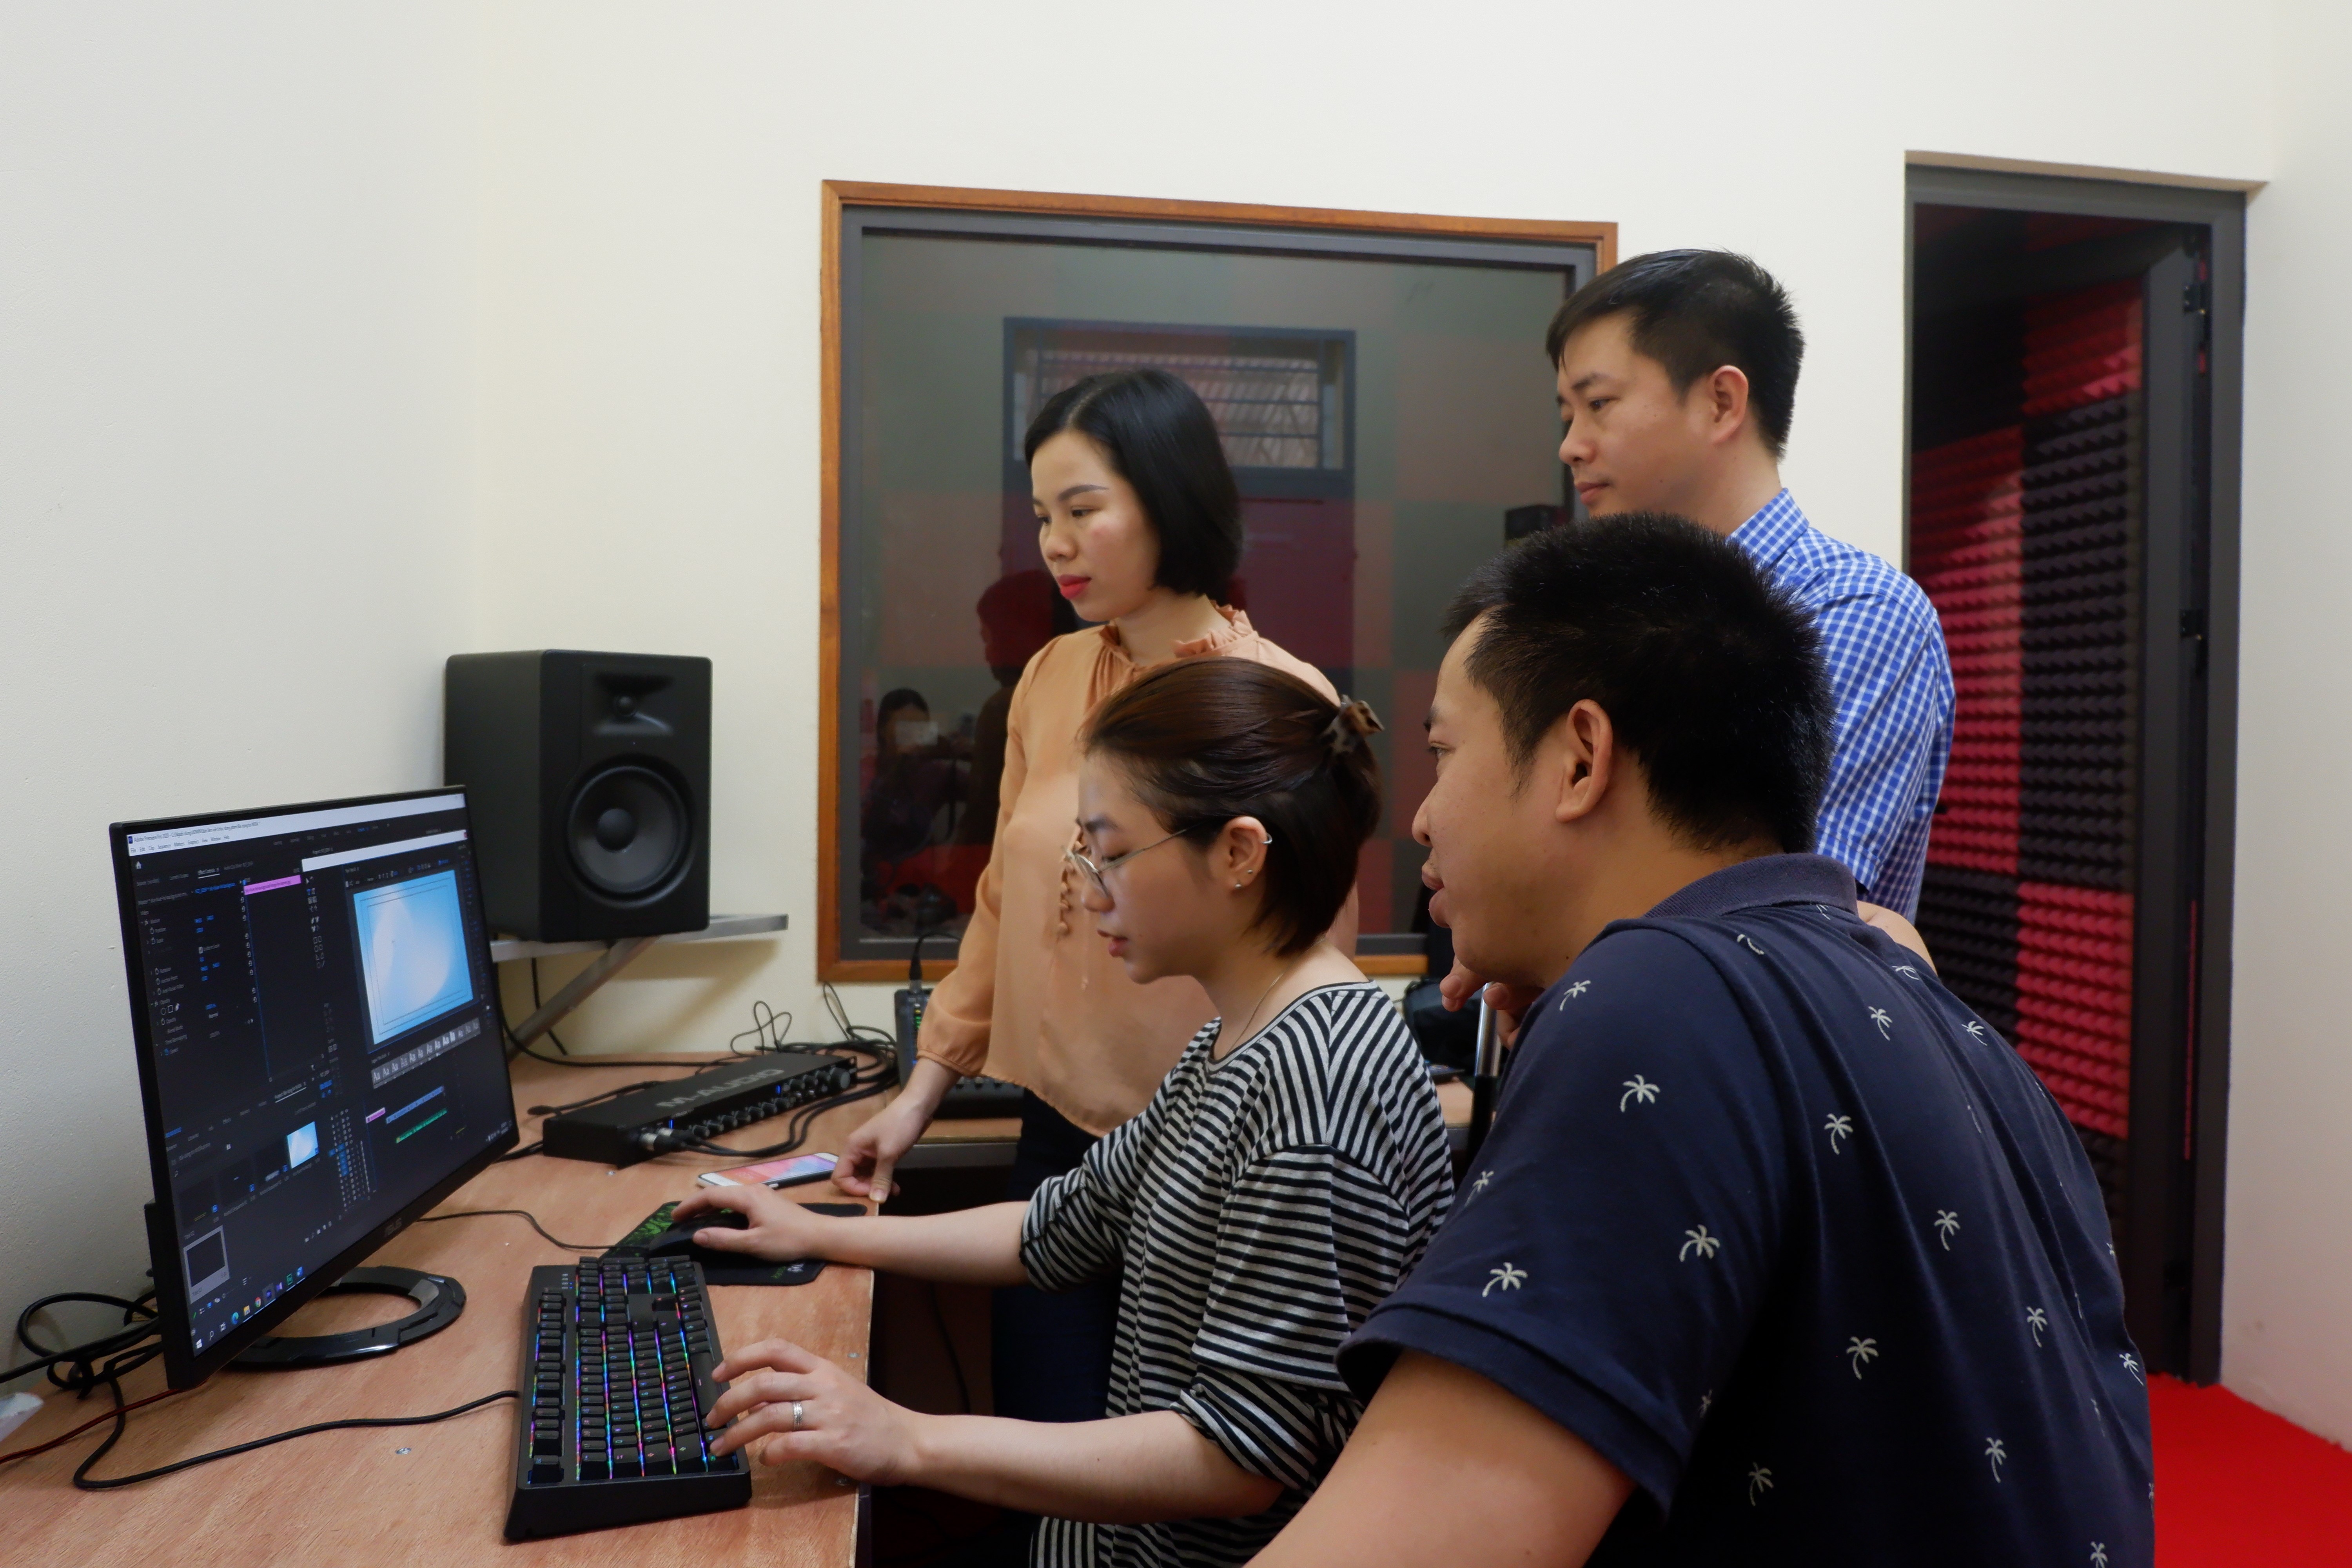 Trung tâm Văn hóa và Chiếu phim tổ chức các lớp tập huấn  nghiệp vụ điện ảnh âm thanh, ánh sáng cho cán bộ chuyên môn